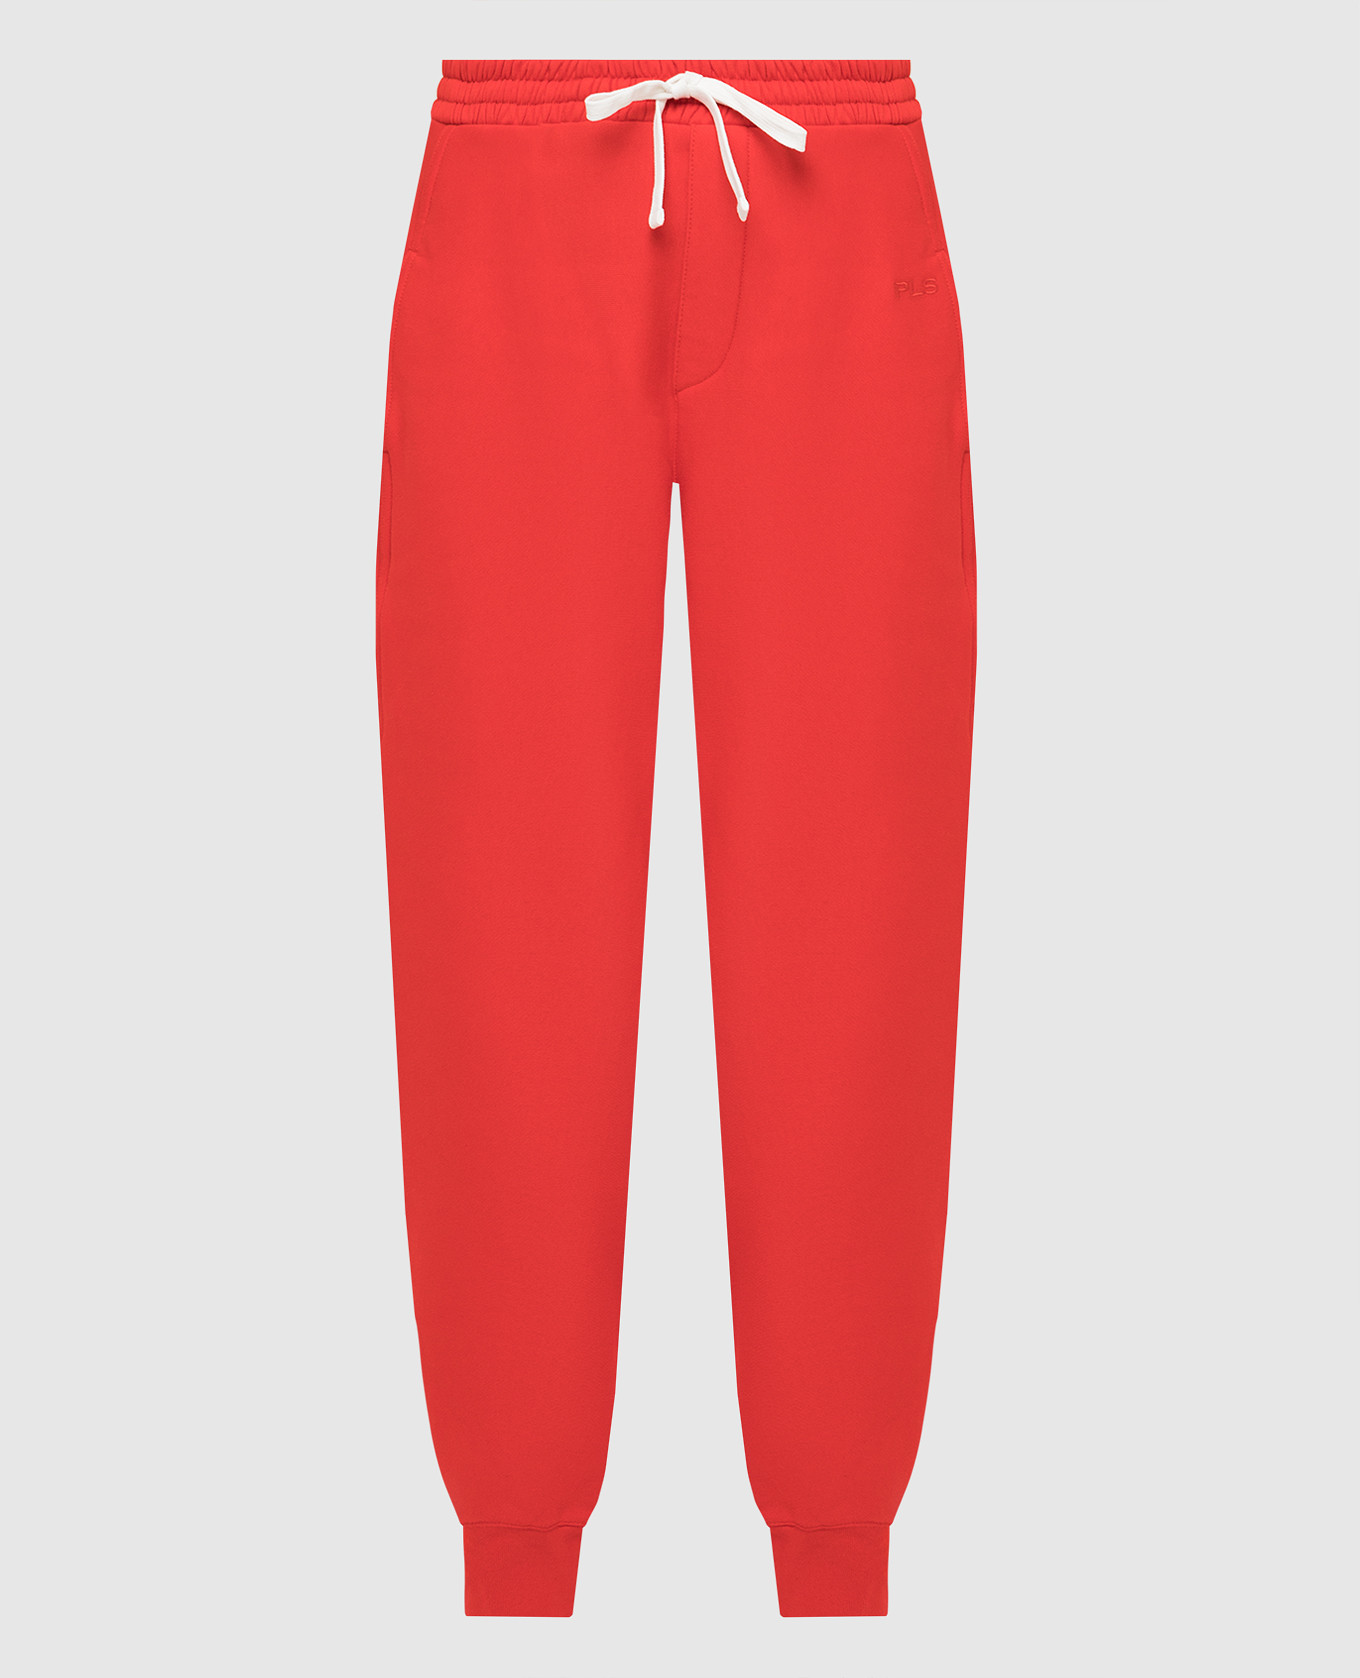 Красные спортивные брюки с вышивкой логотипа